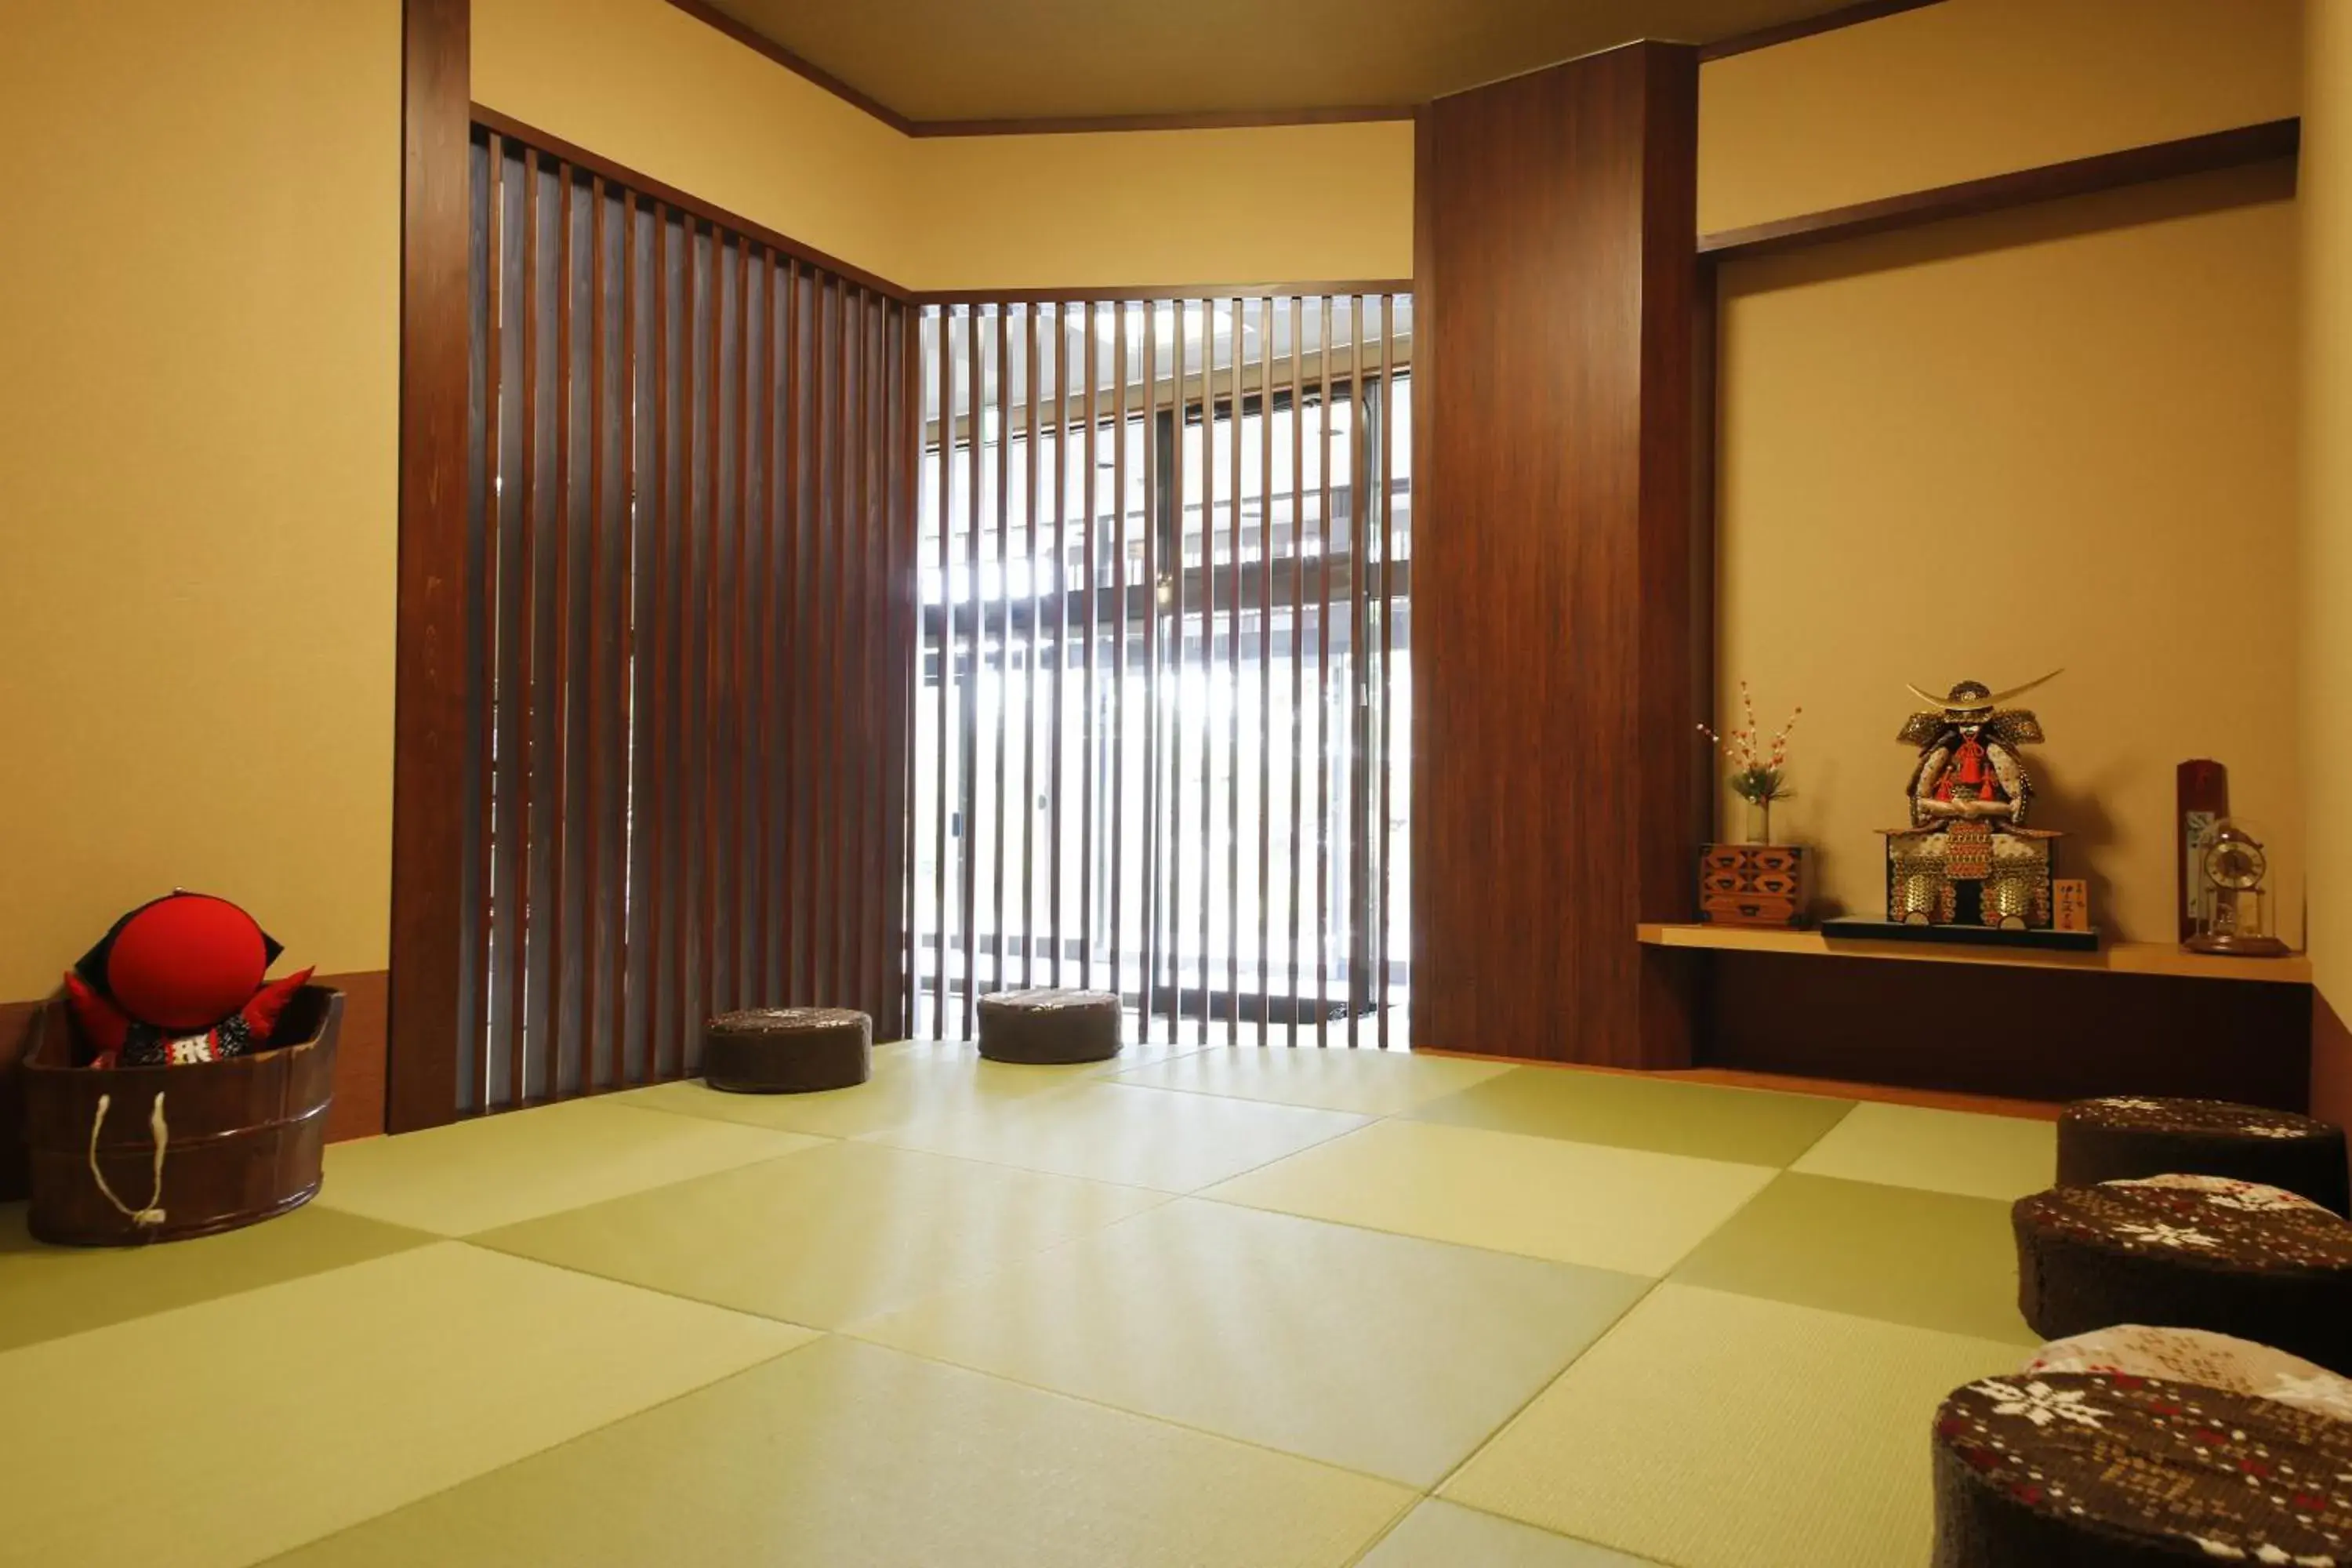 Lobby or reception in Oyado Hachibei